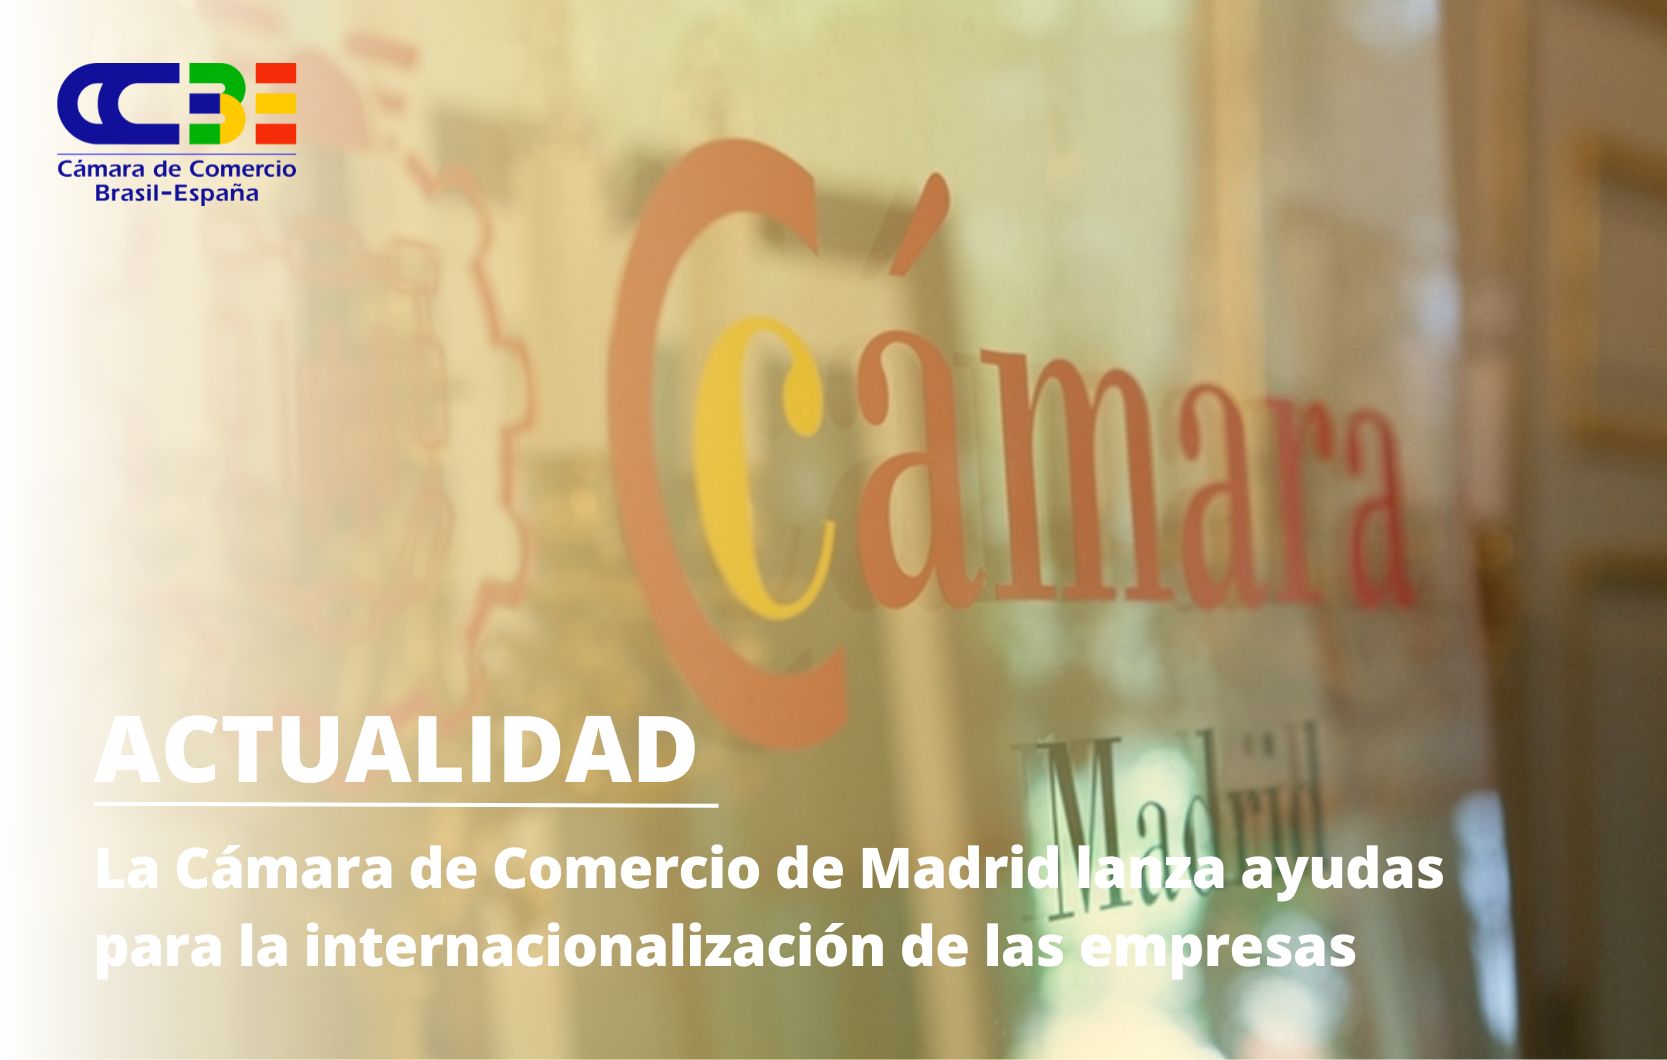 La Cámara de Comercio de Madrid lanza ayudas para la internacionalización de las empresas